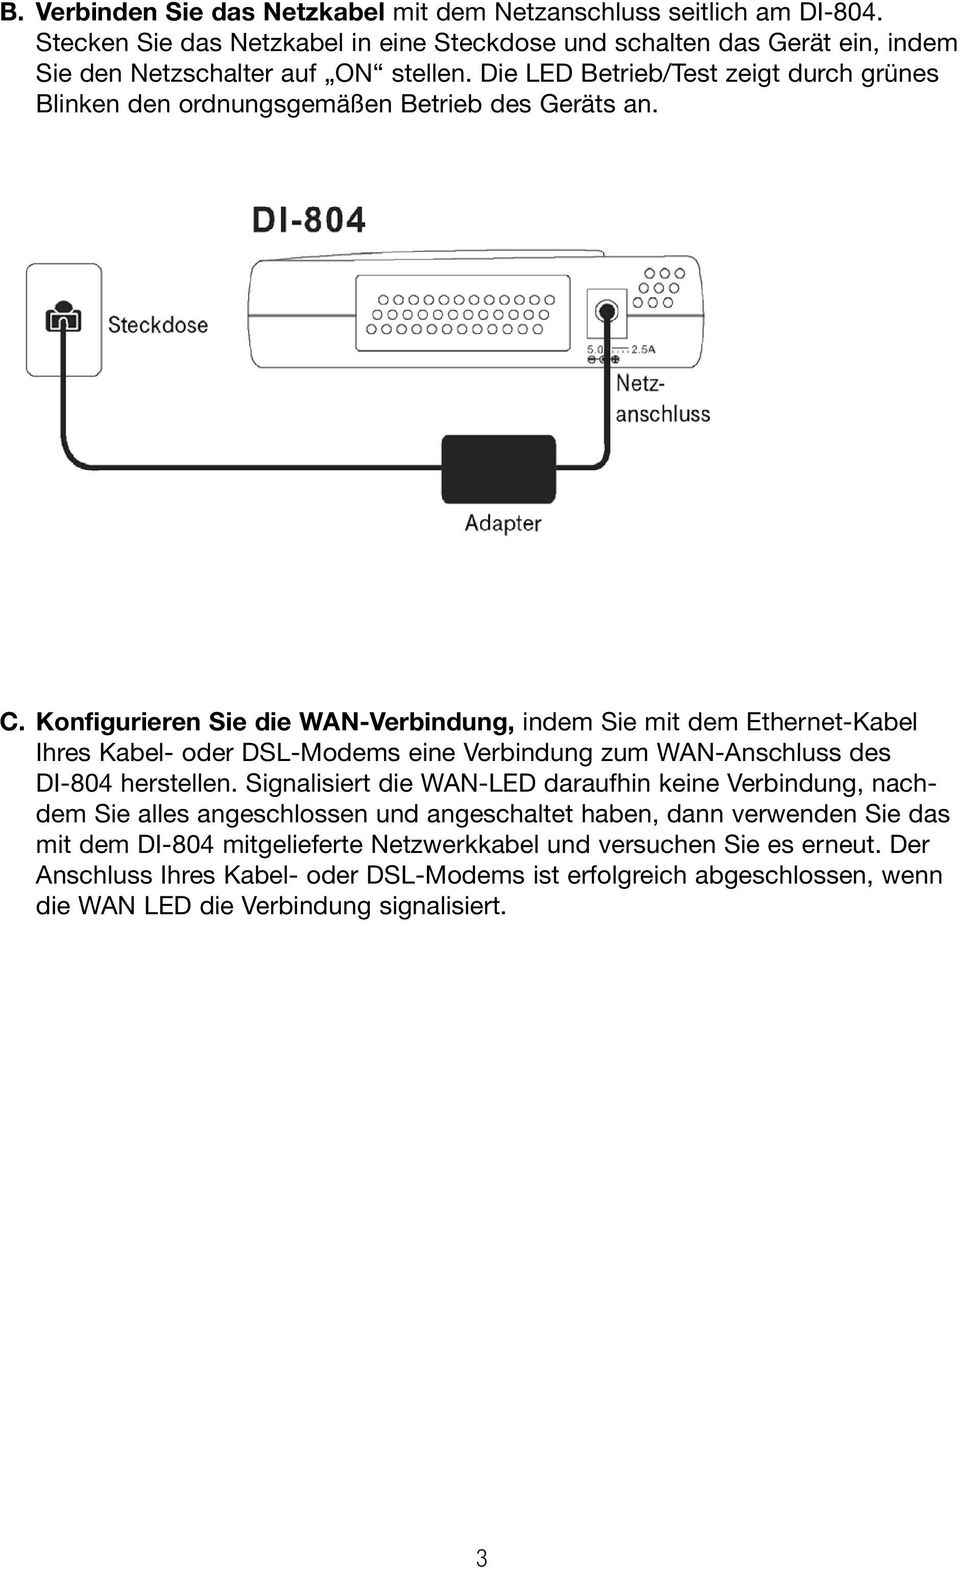 Konfigurieren Sie die WAN-Verbindung, indem Sie mit dem Ethernet-Kabel Ihres Kabel- oder DSL-Modems eine Verbindung zum WAN-Anschluss des DI-804 herstellen.